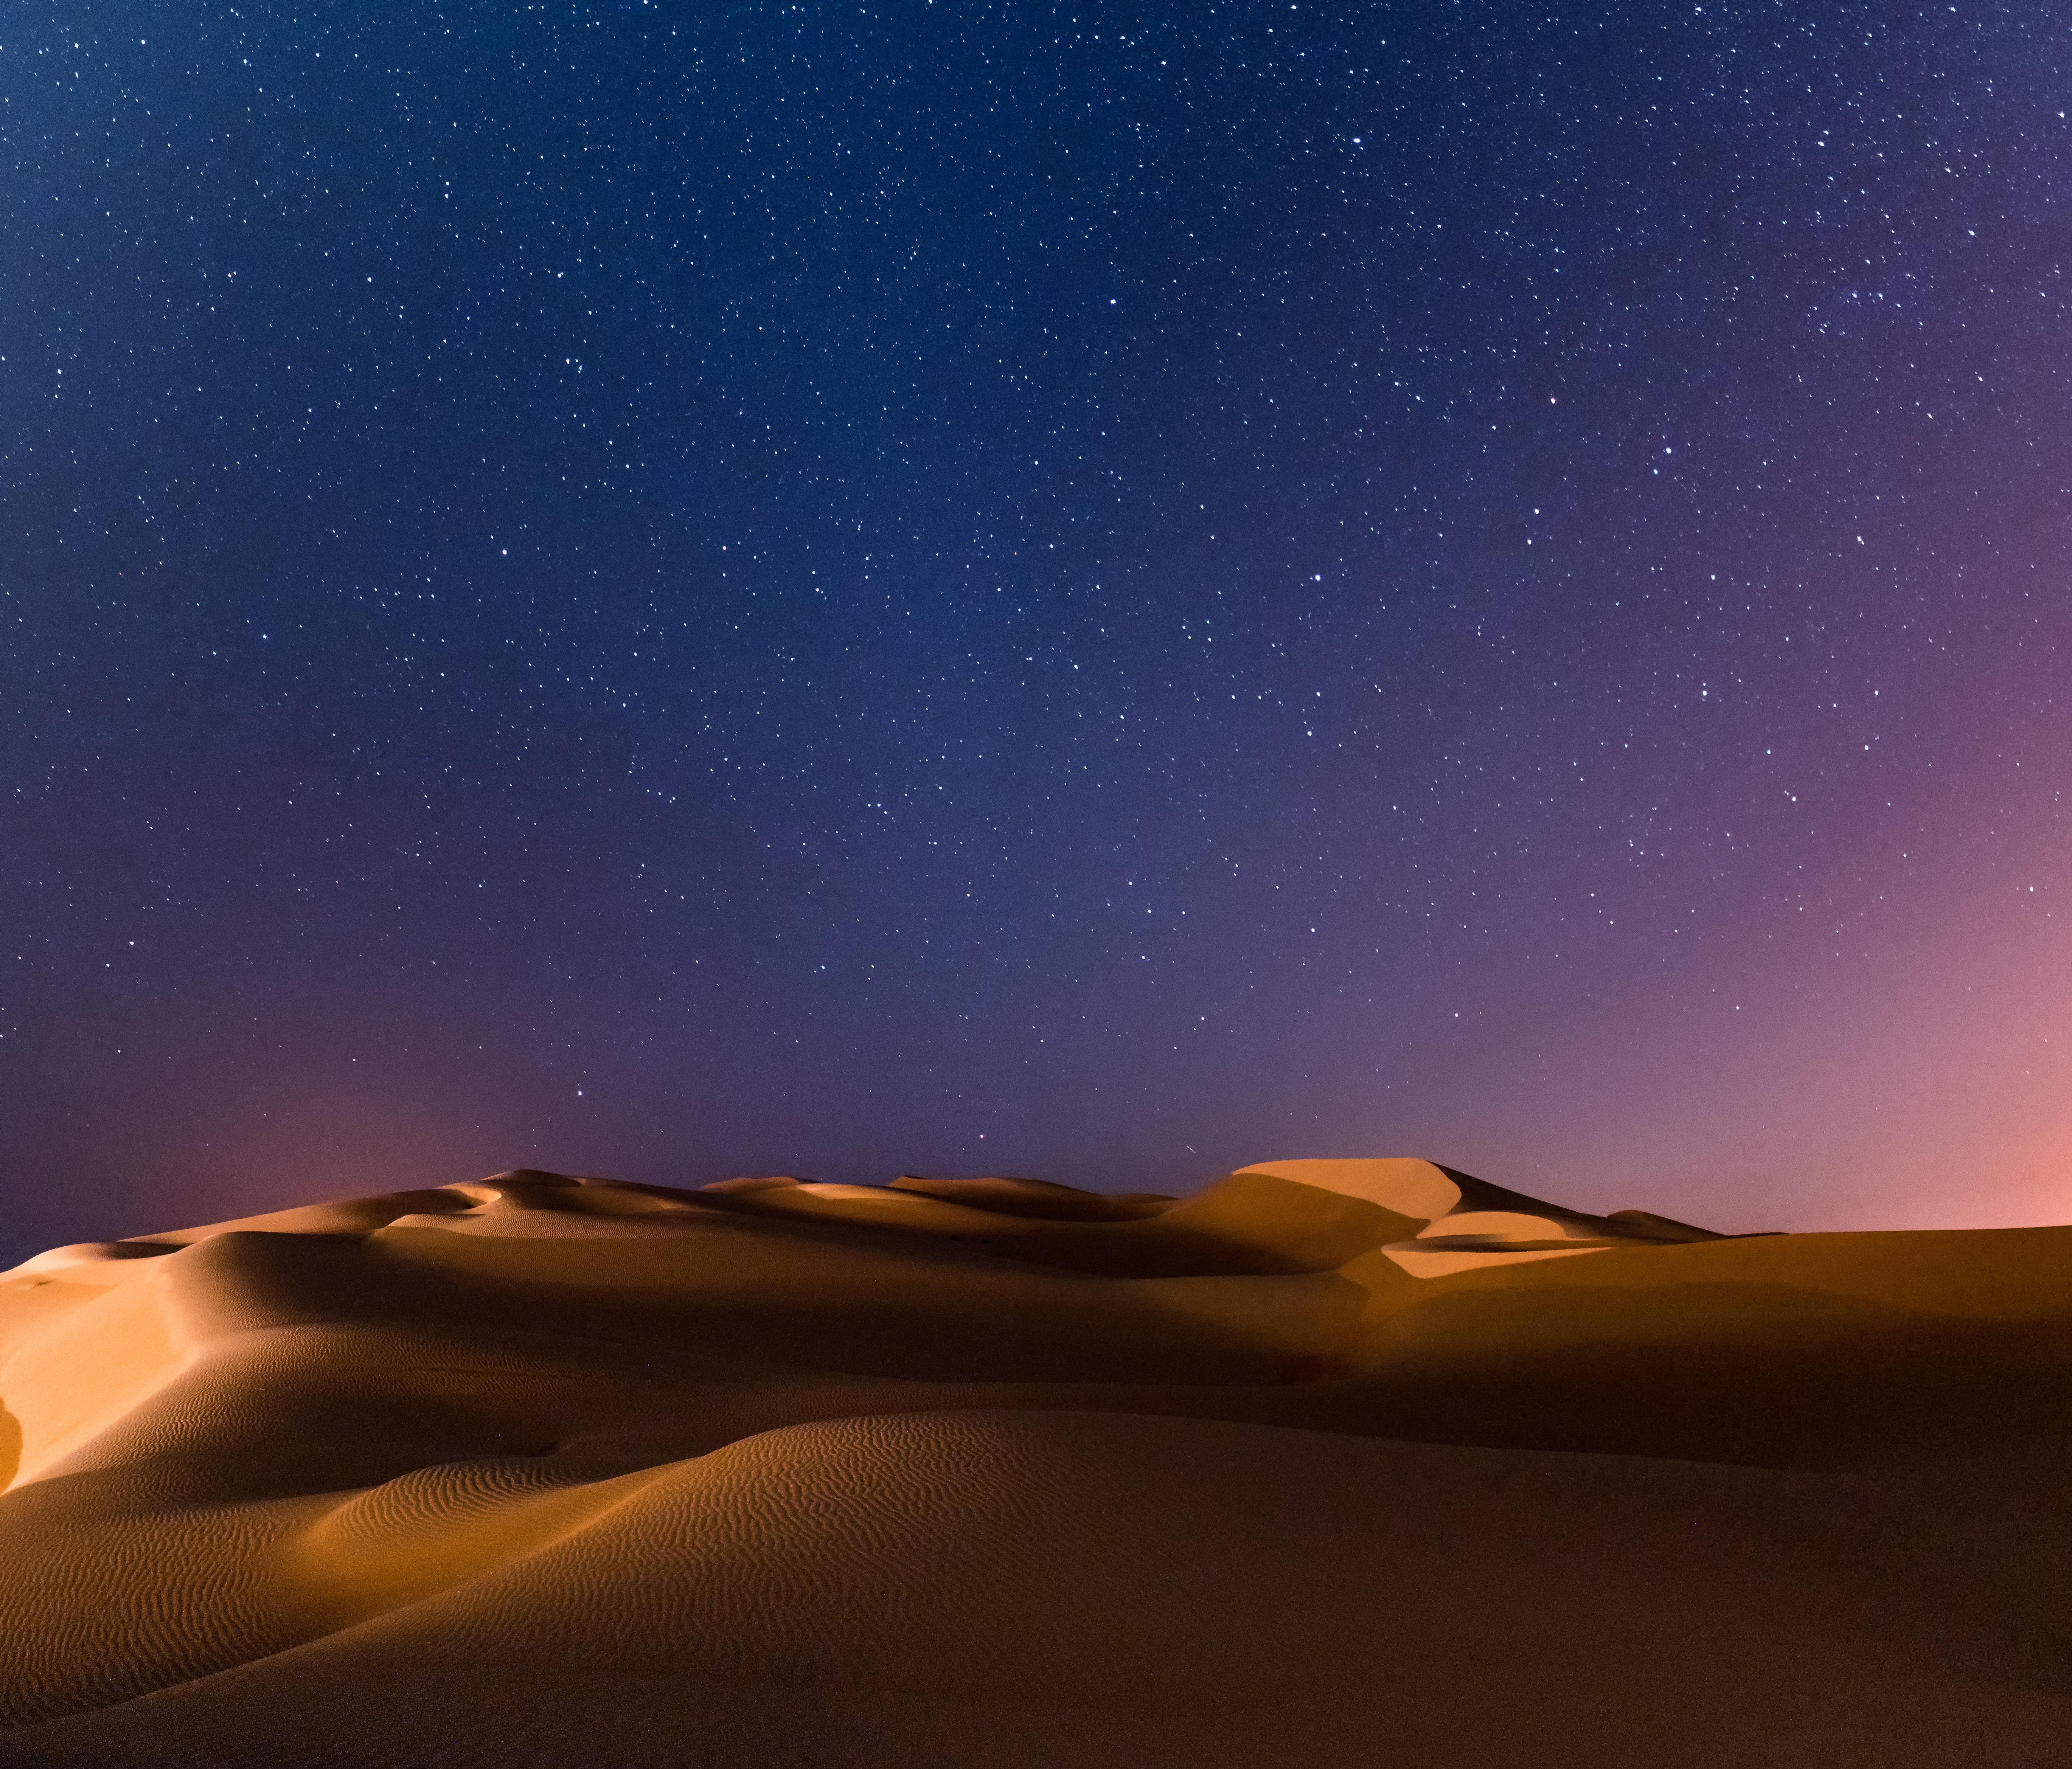 Arabian Nights (Rub' al Khali Desert, Abu Dhabi) [OC] [6954